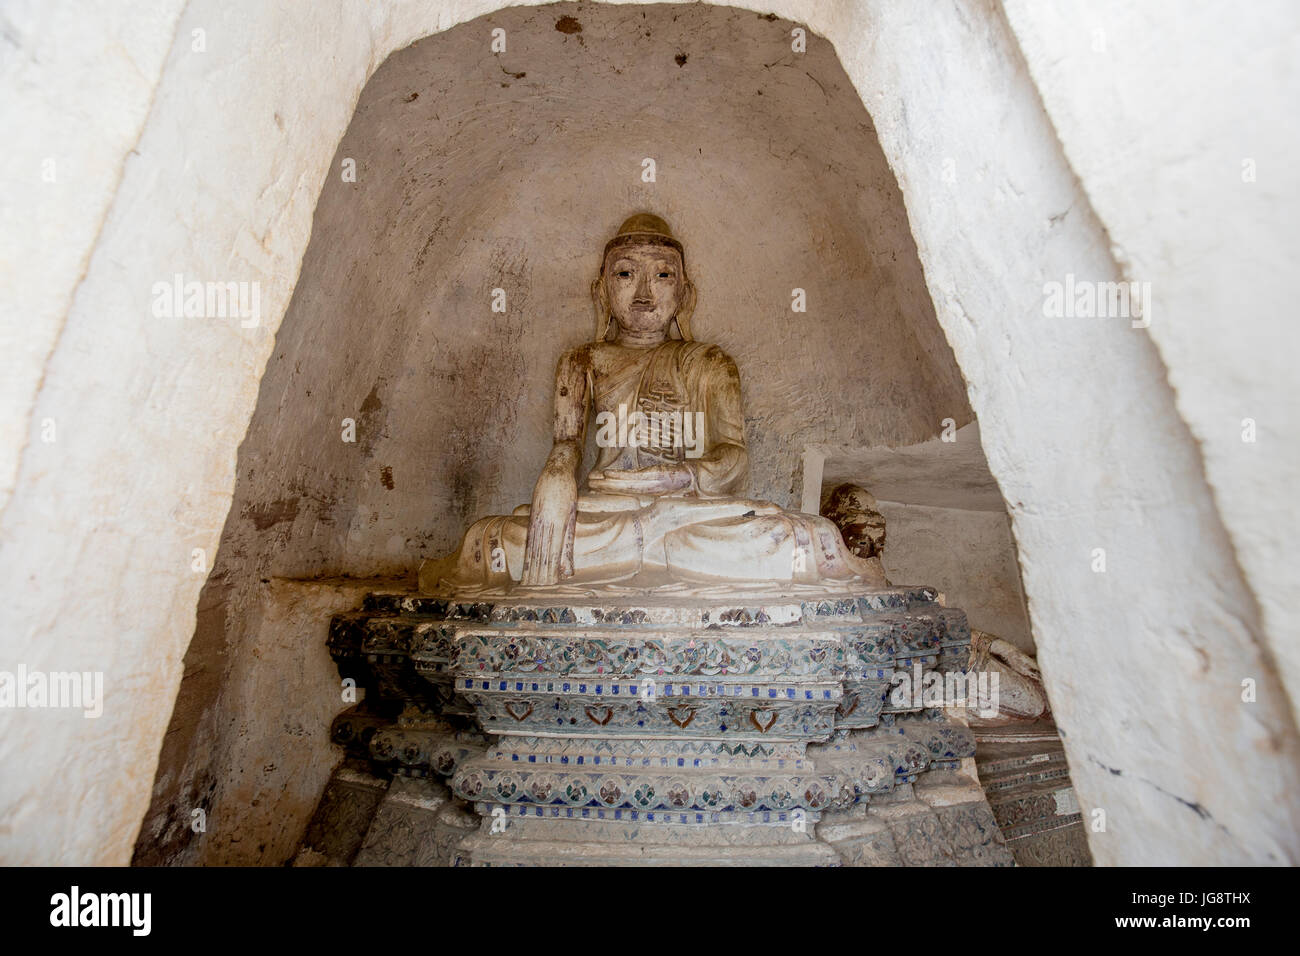 Bellissima statua di Buddha all'interno di Po Win Daung grotte nel quartiere Monywa Sagaing Regione Nord del Myanmar / Birmania - Foto di viaggio / cultura Myanmar Foto Stock